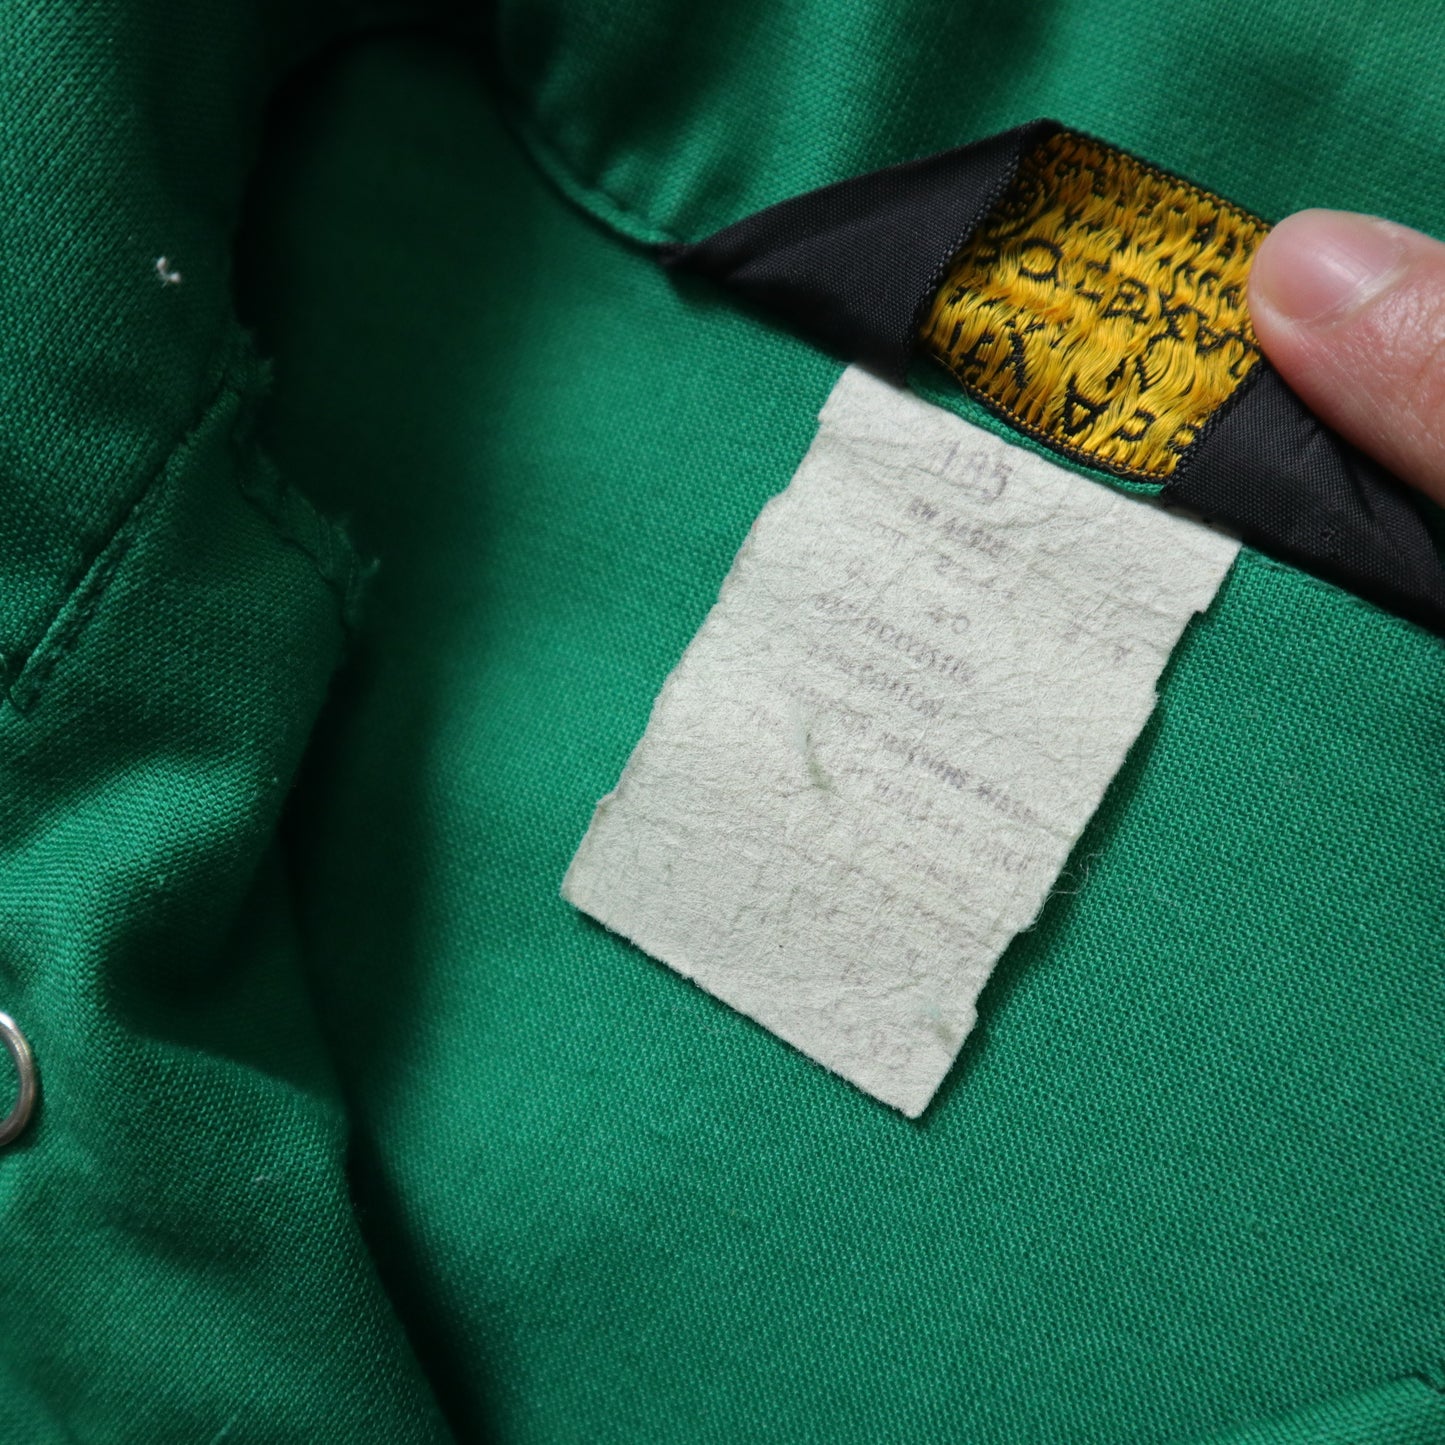 1970s 綠色鎖鍊繡箭領工作襯衫 Union made